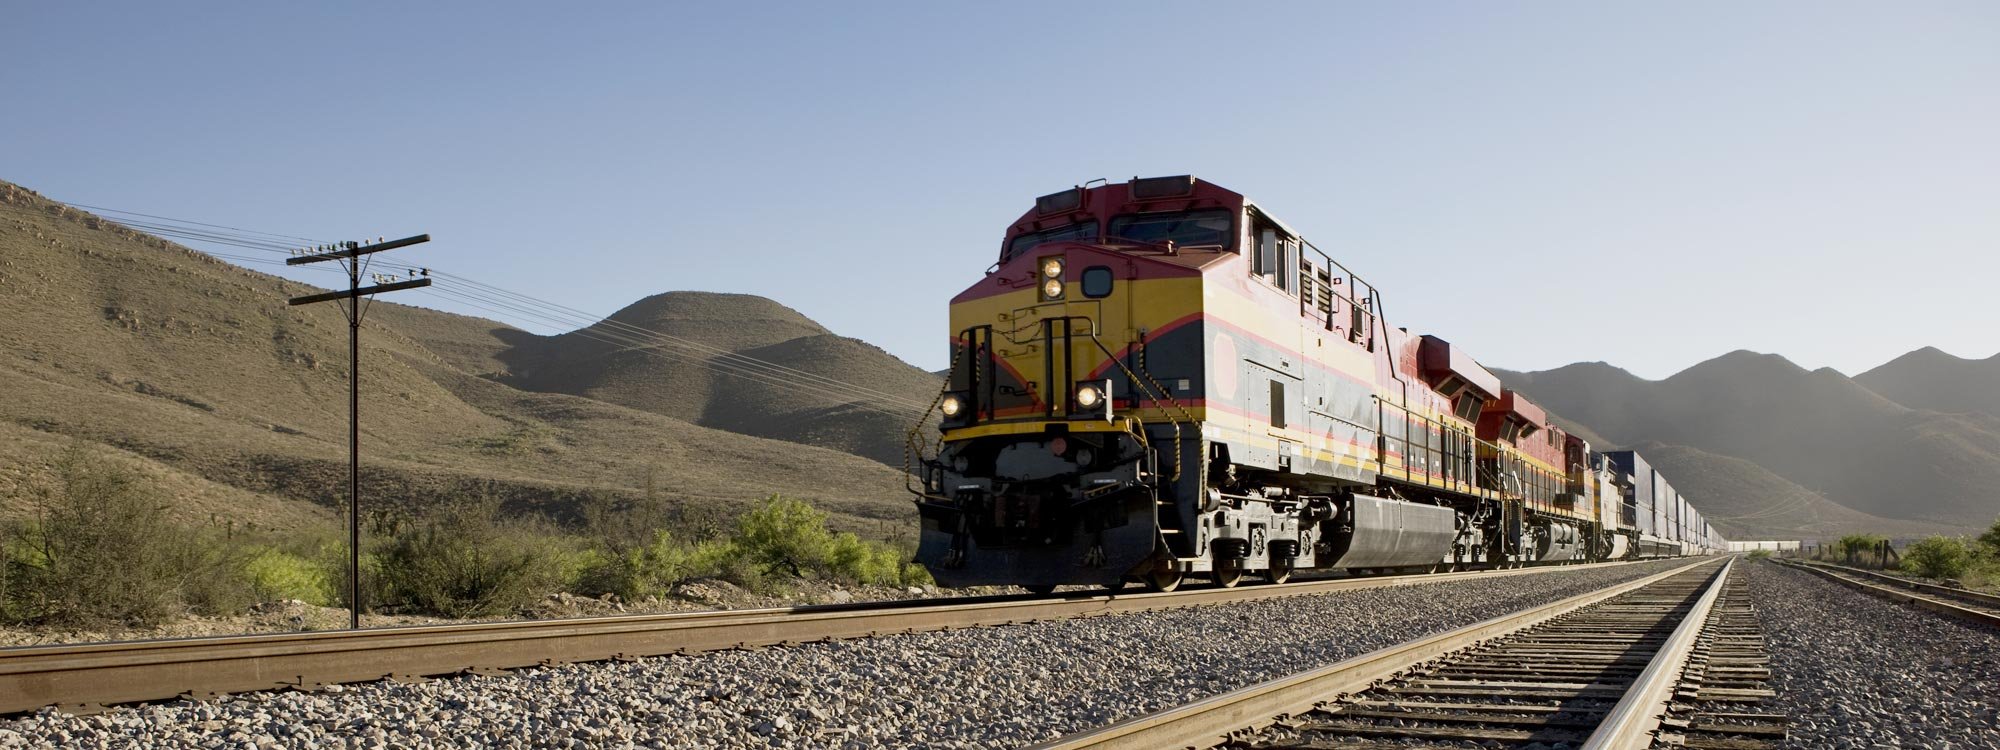 轨道车和铁路交通:关键组件满足关键的业务挑战